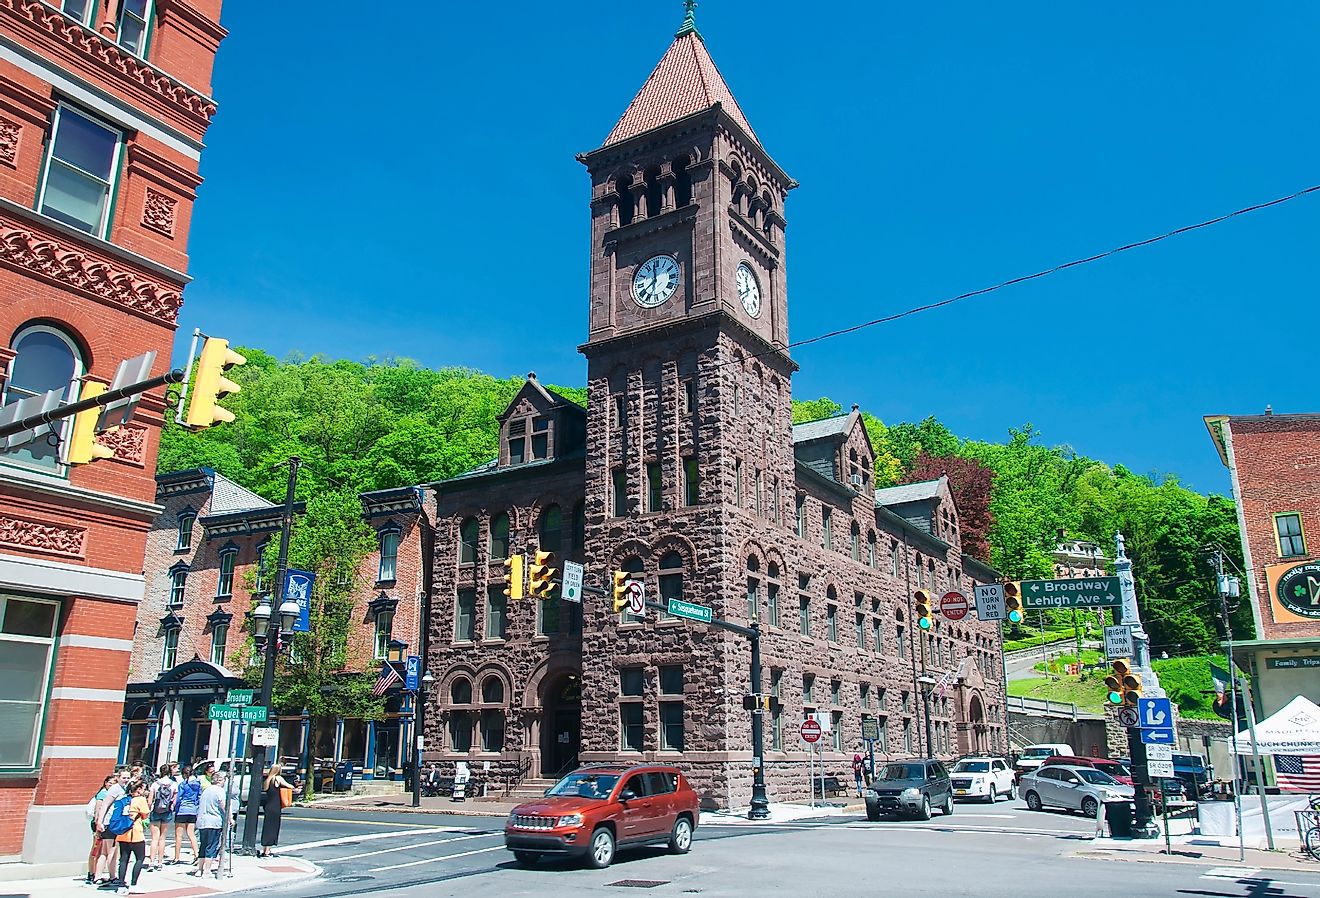 Historic town of Jim Thorpe, Pennsylvania. Image credit Dan Hanscom via Shutterstock